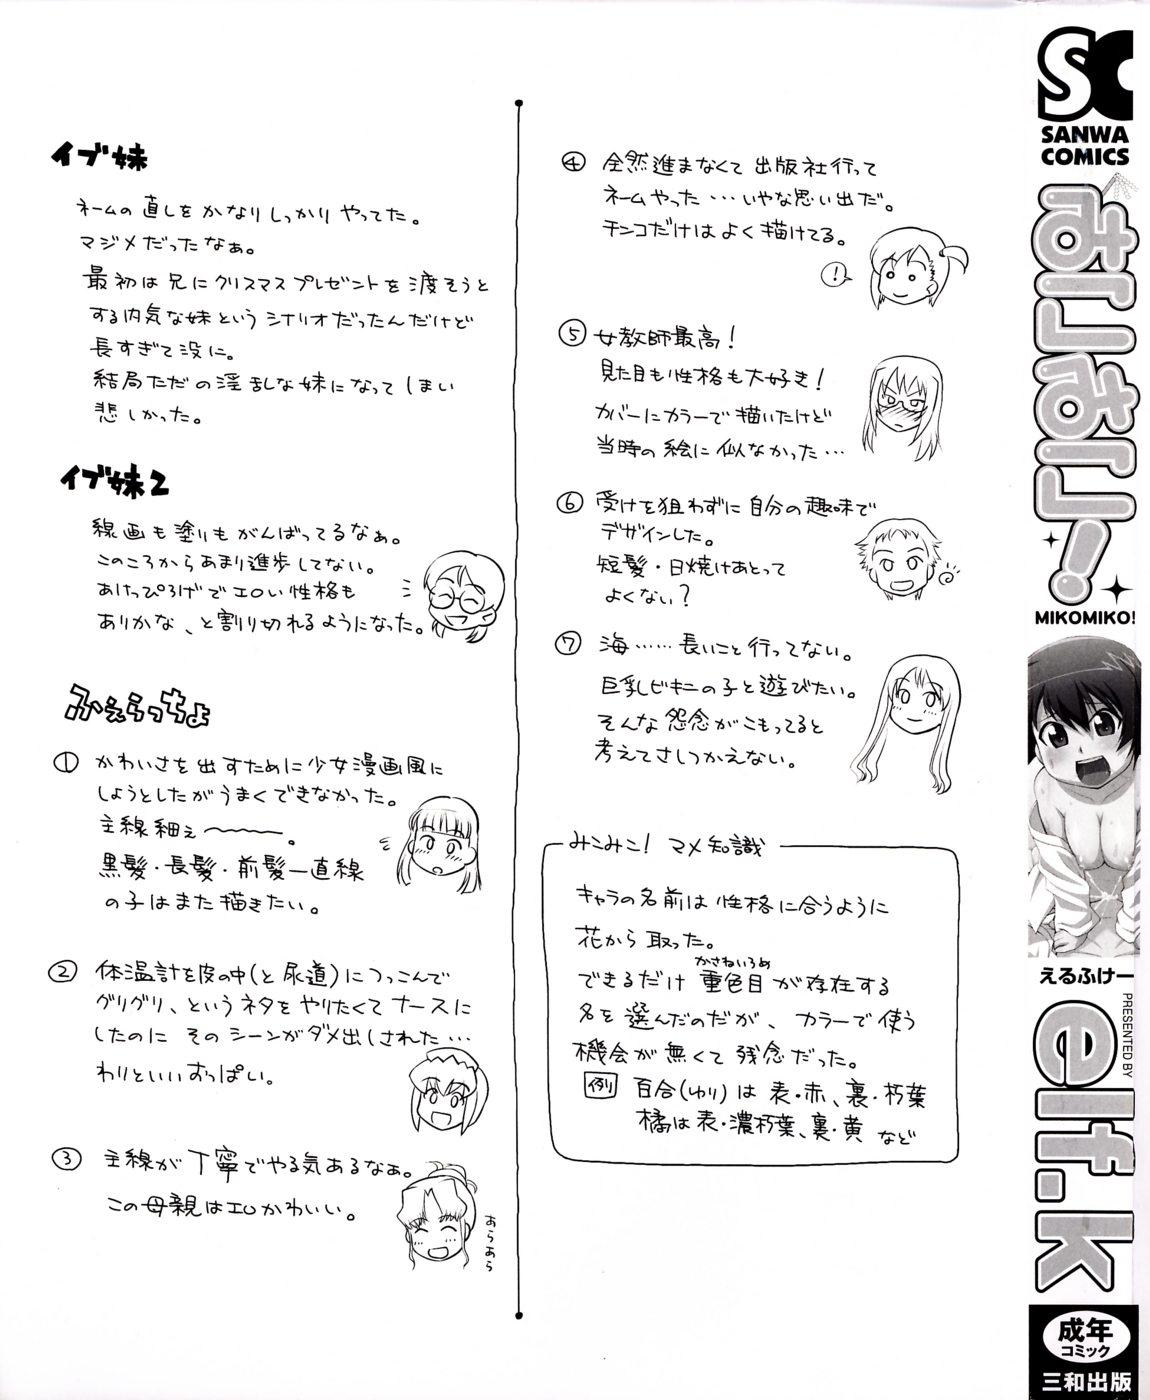 Strip Mikomiko! Striptease - Page 3